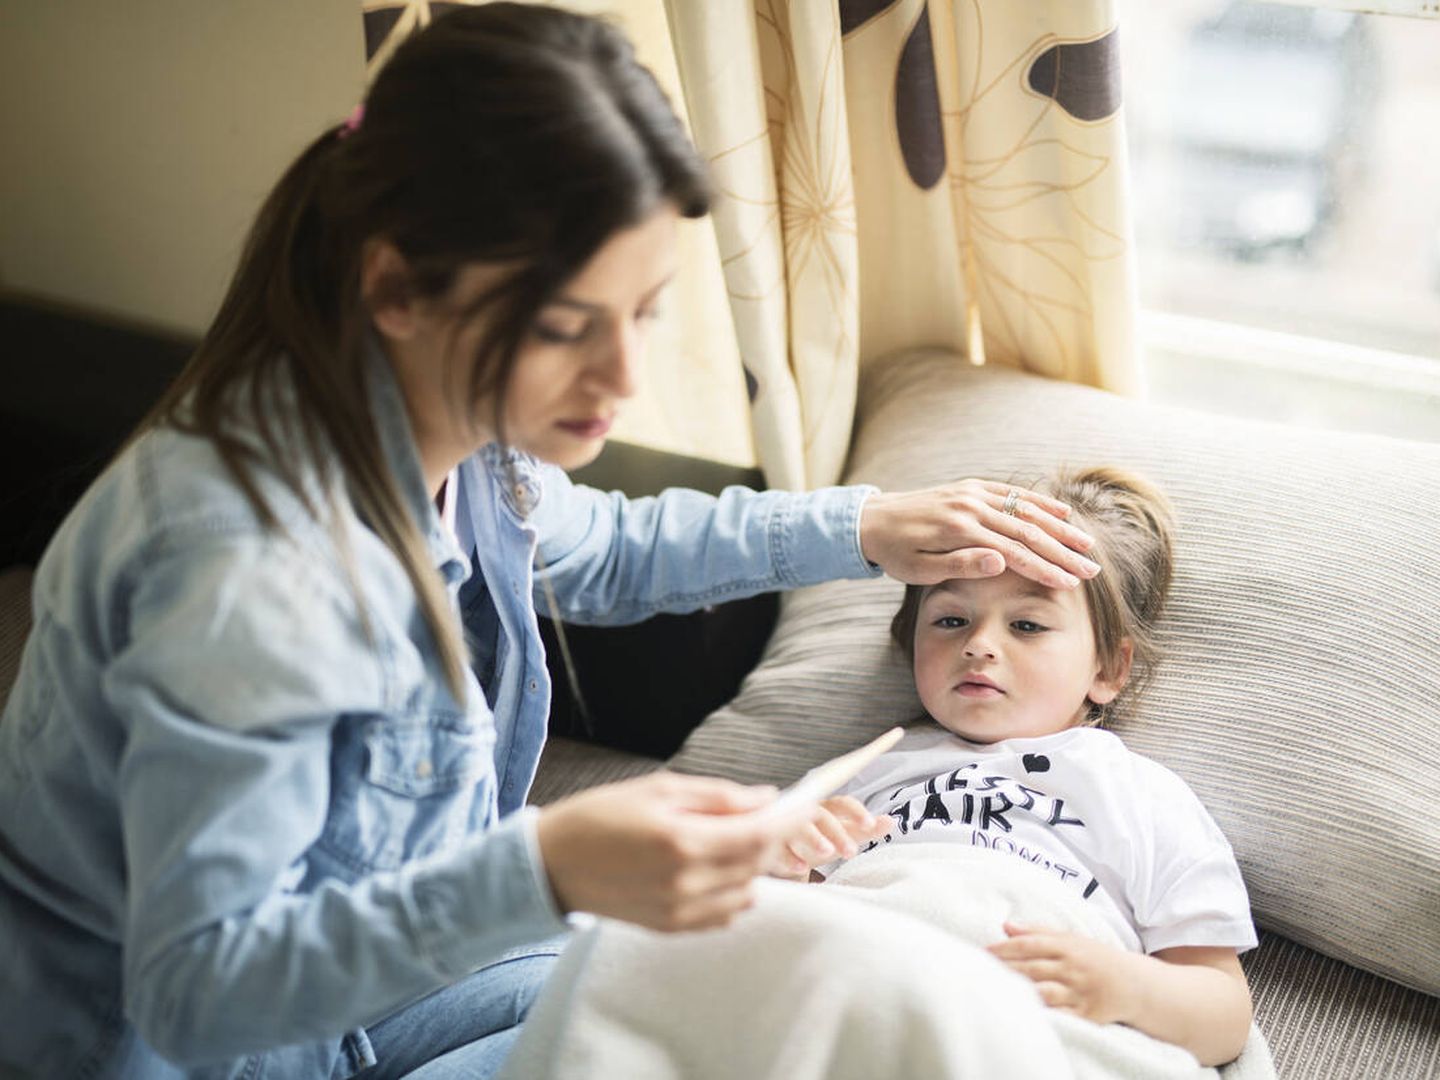 La fiebre en los niños preocupa mucho a los padres. (iStock)